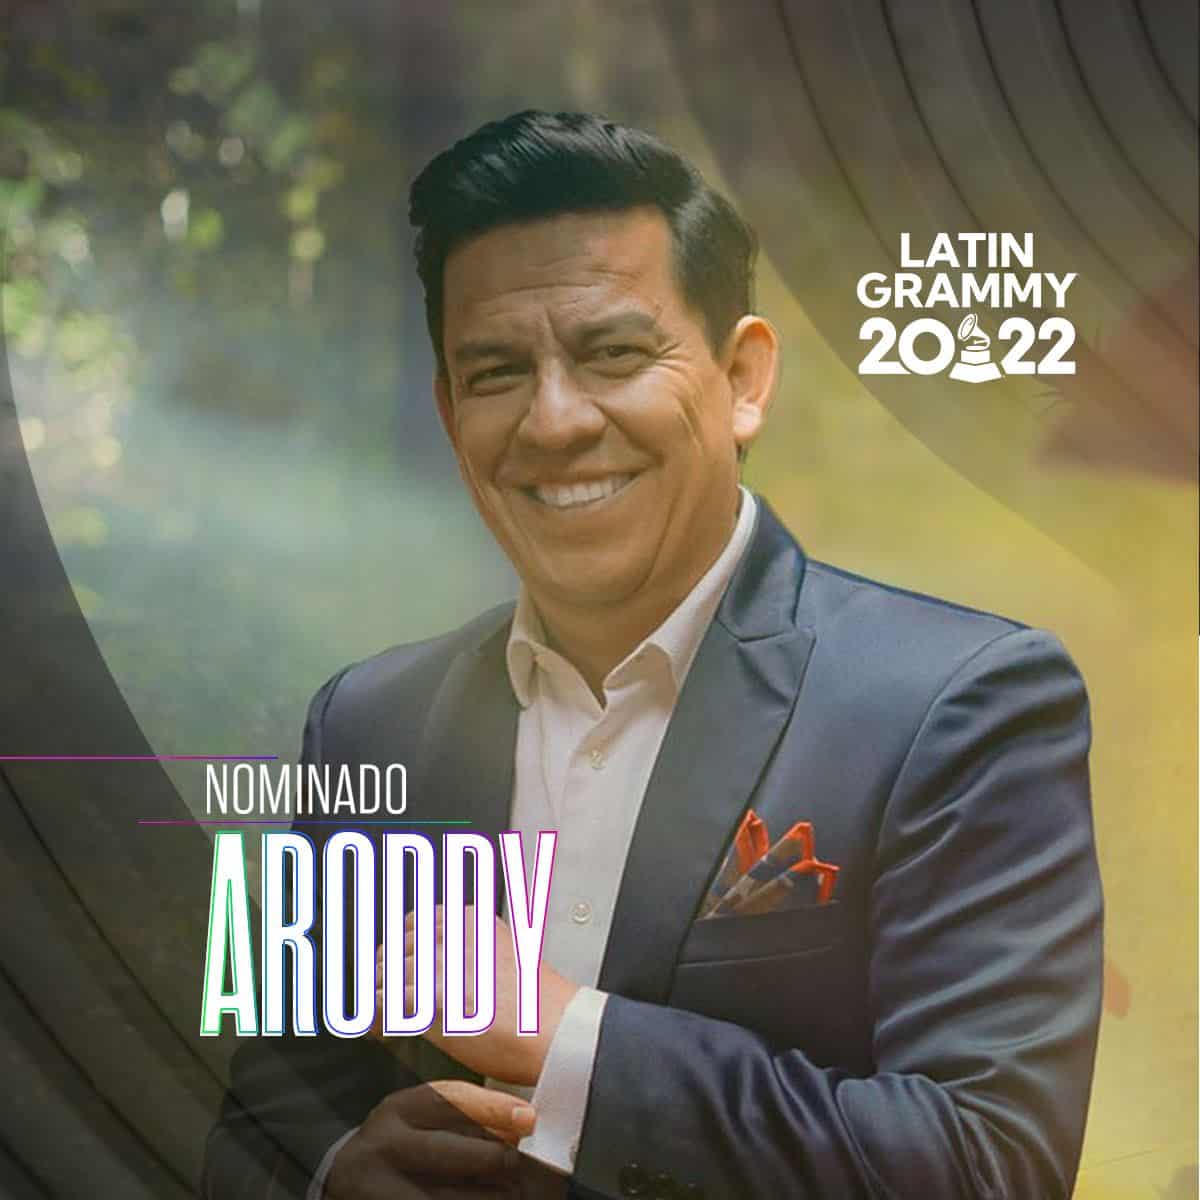 Expo compositor felicita a su artista Aroddy por obtiene nominación en los latin grammy ¡por segundo año consecutivo!